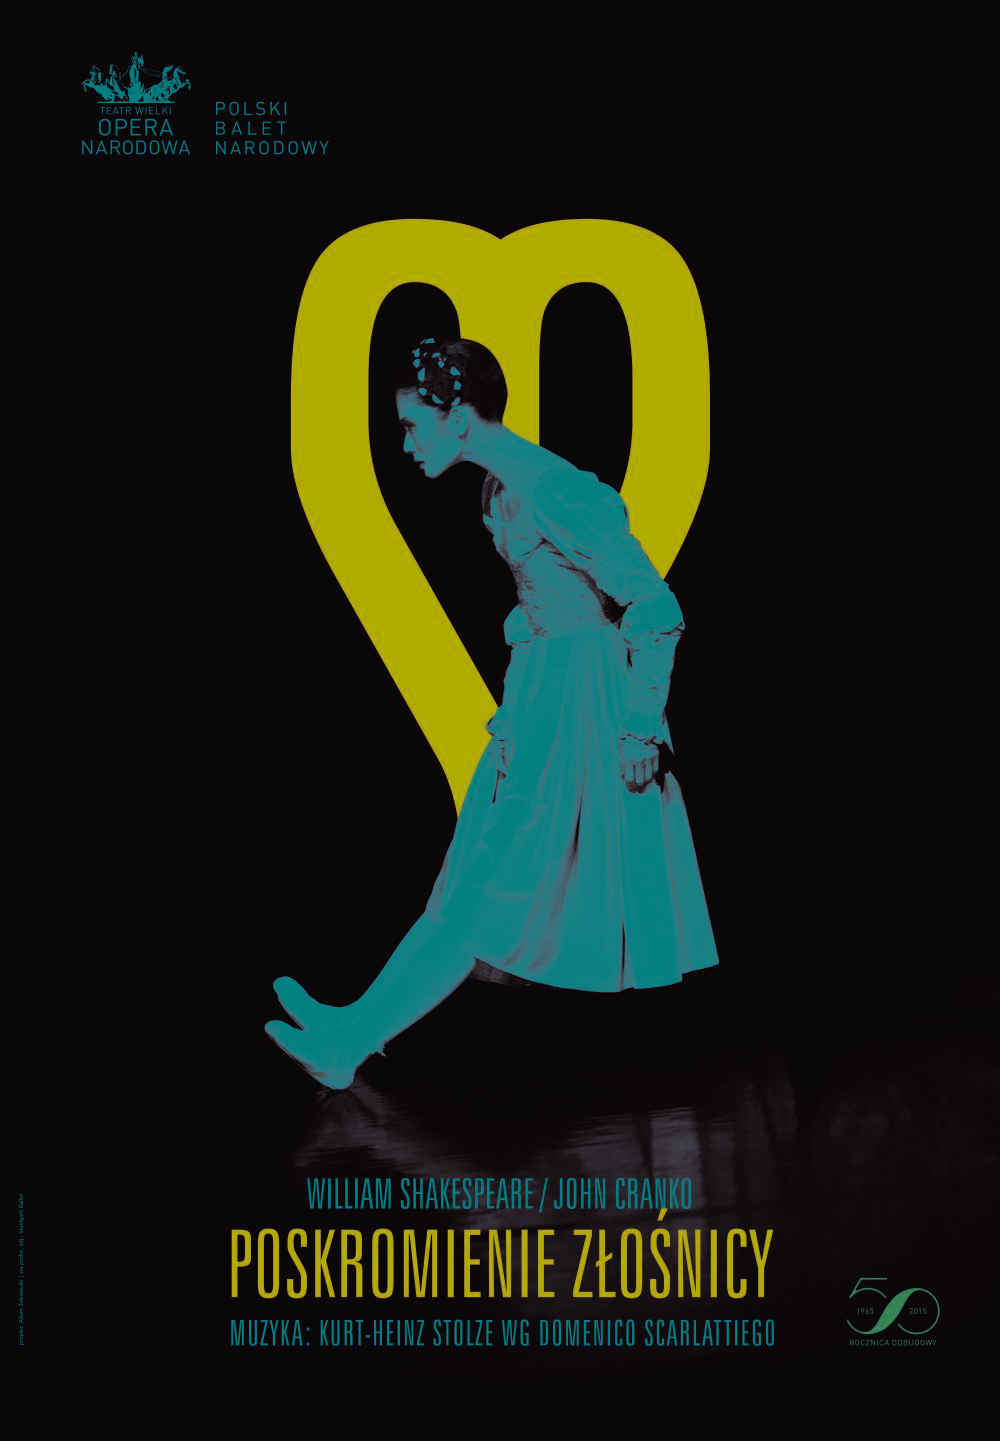 Plakat "Poskromienie złośnicy" John Cranko według Williama Szekspira premiera polska 2015-11-27